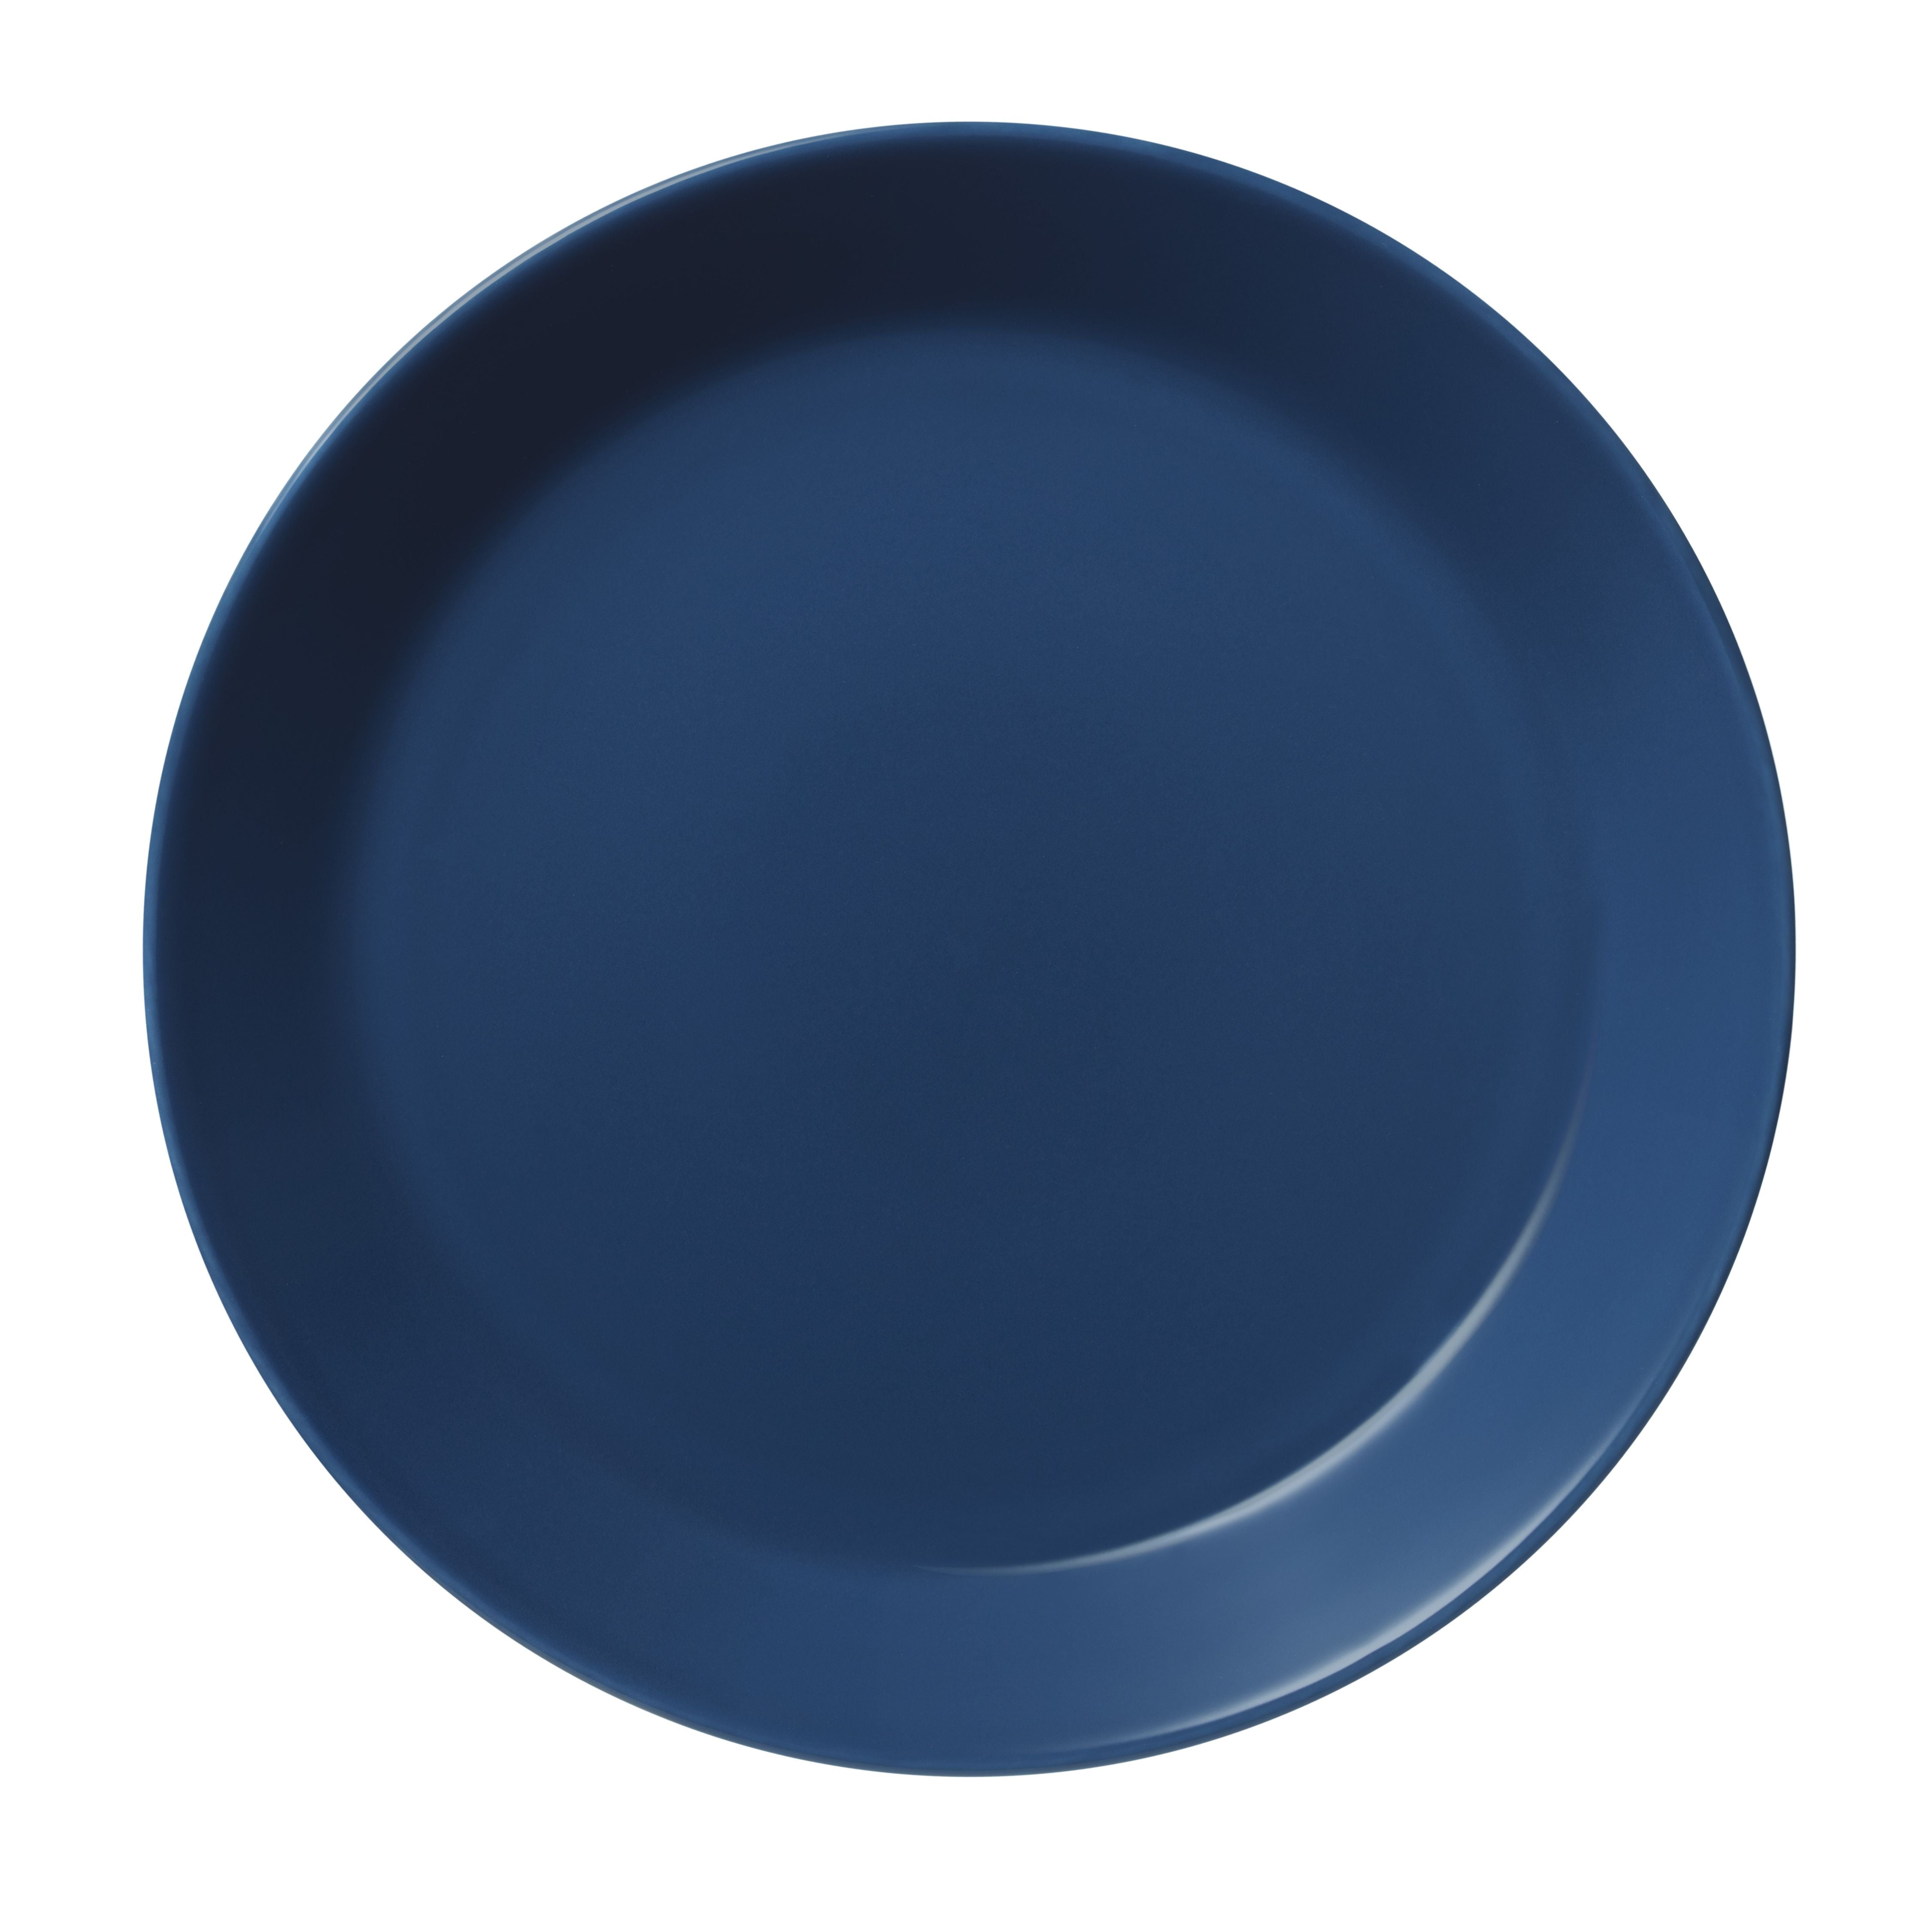 Iittala Teema Plate 23cm, azul vintage